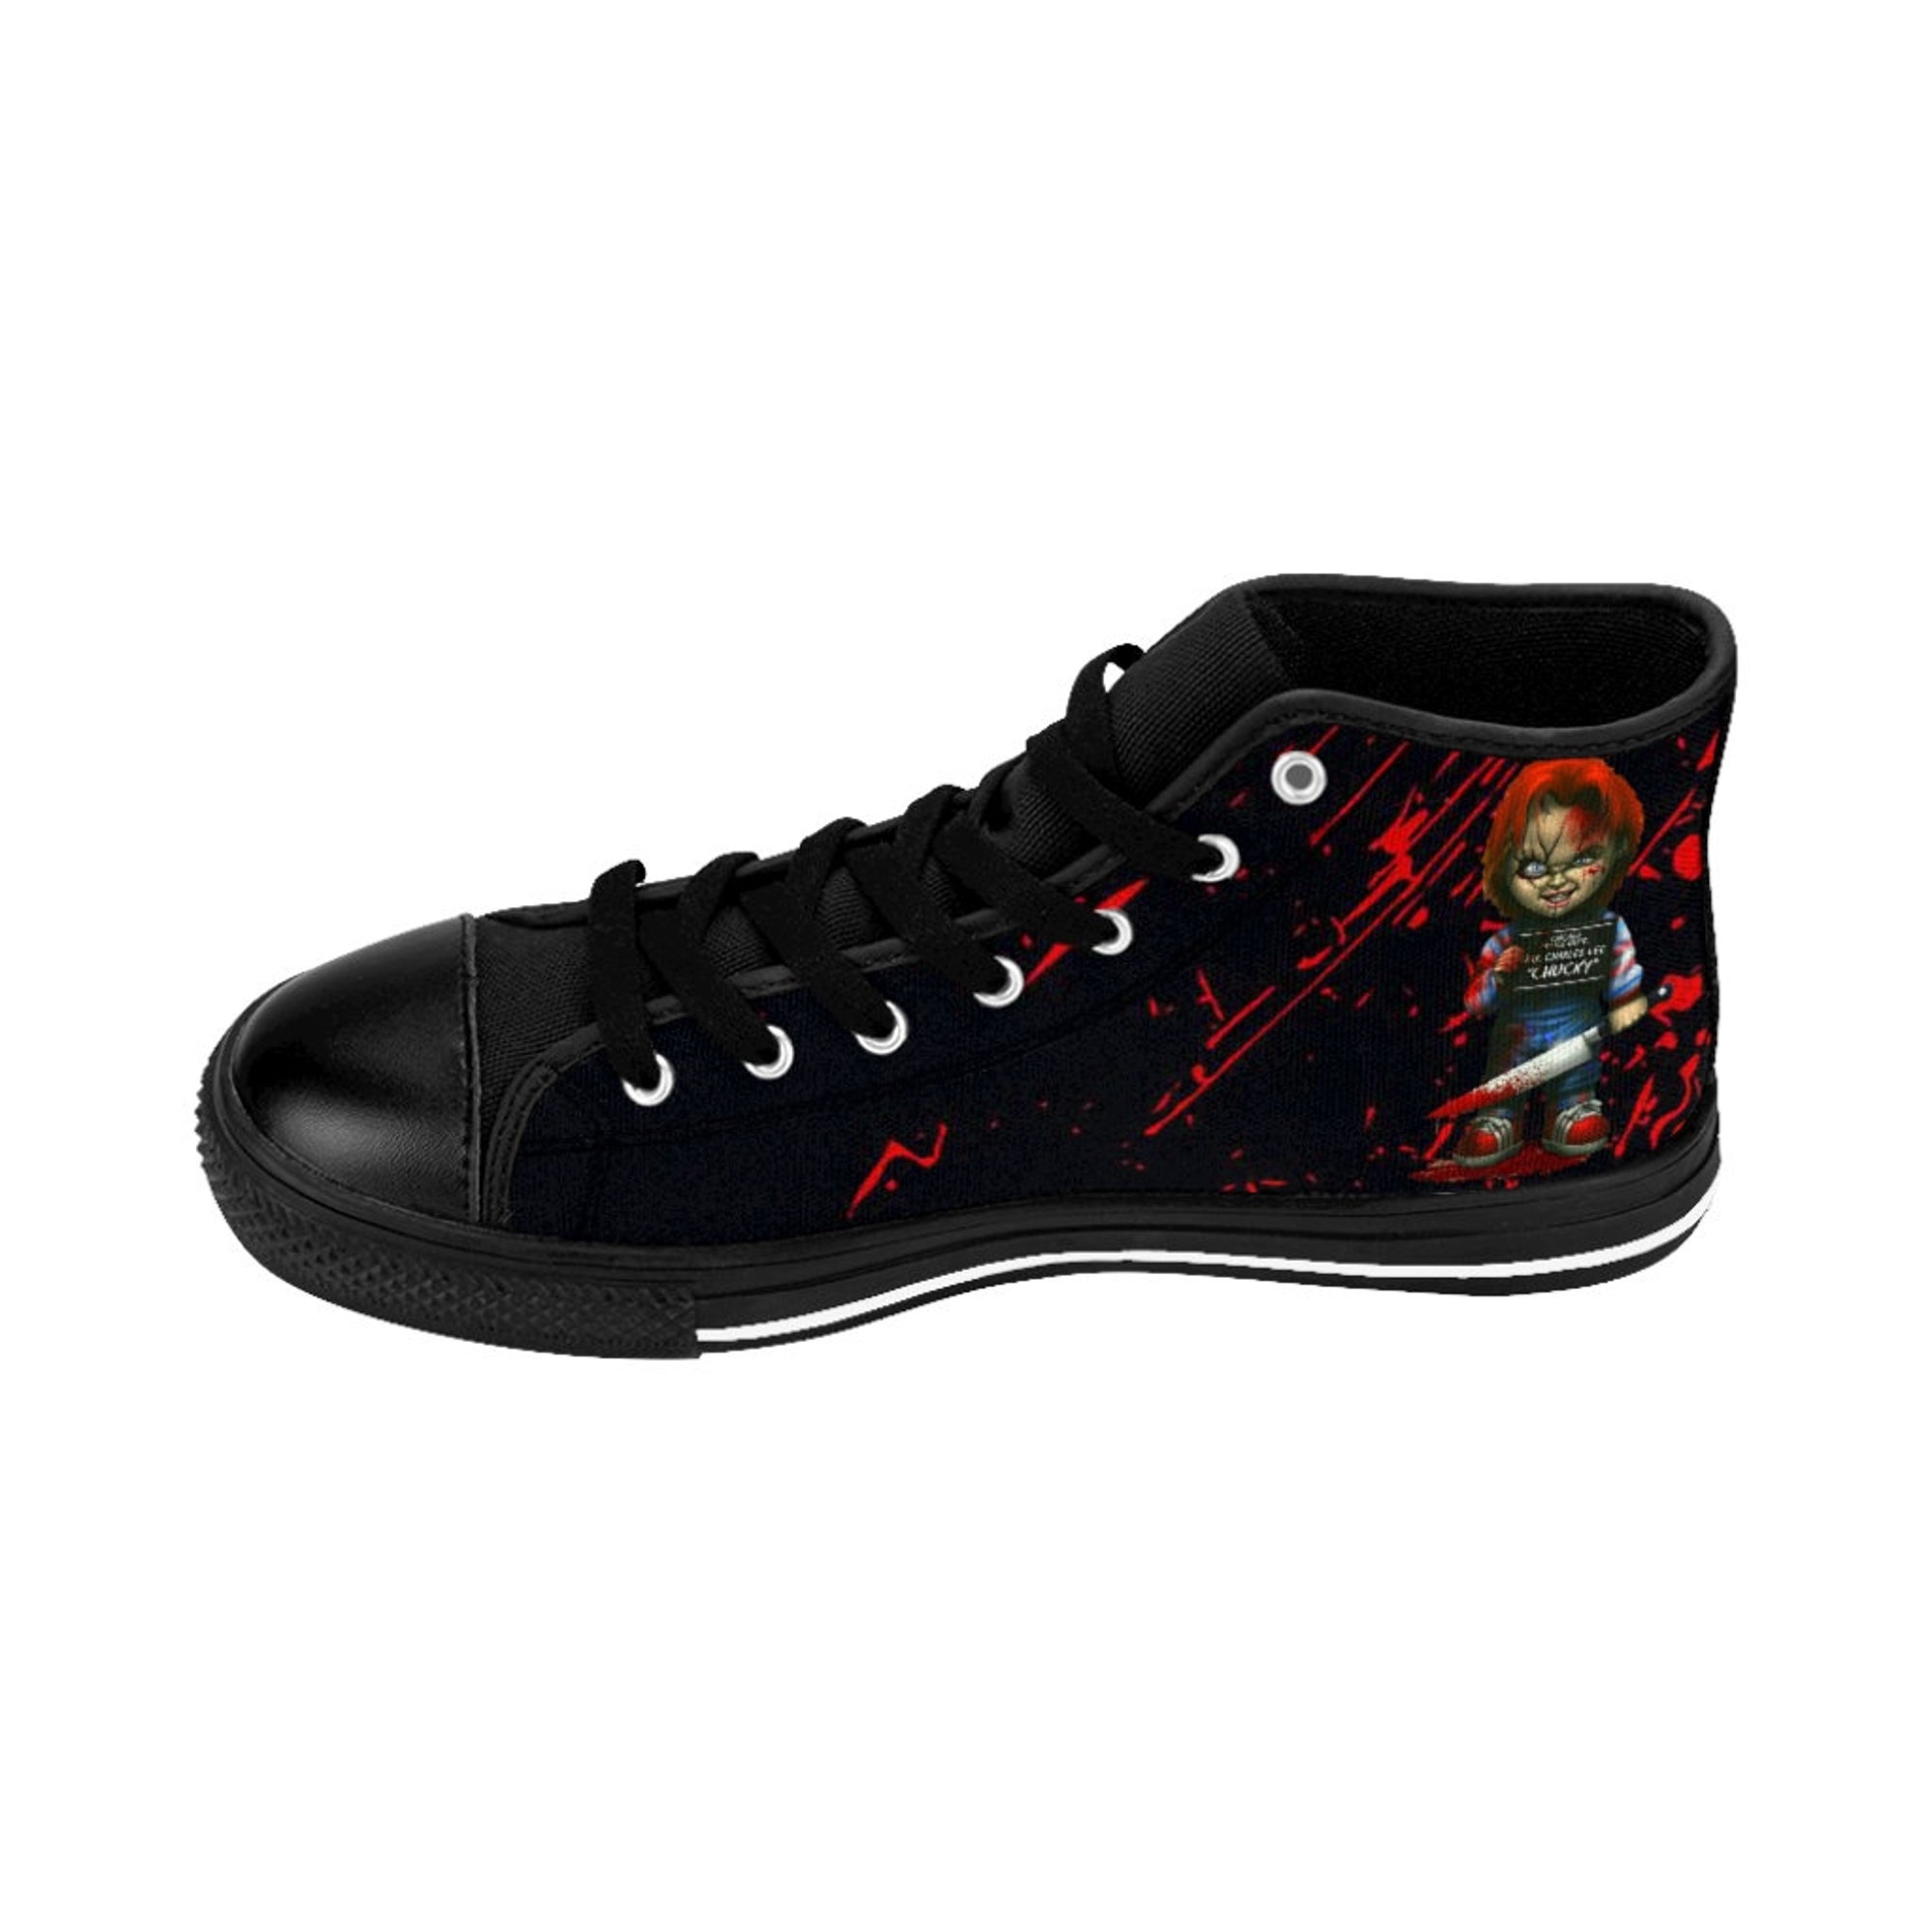 Chucky Men's High Top Sneaker